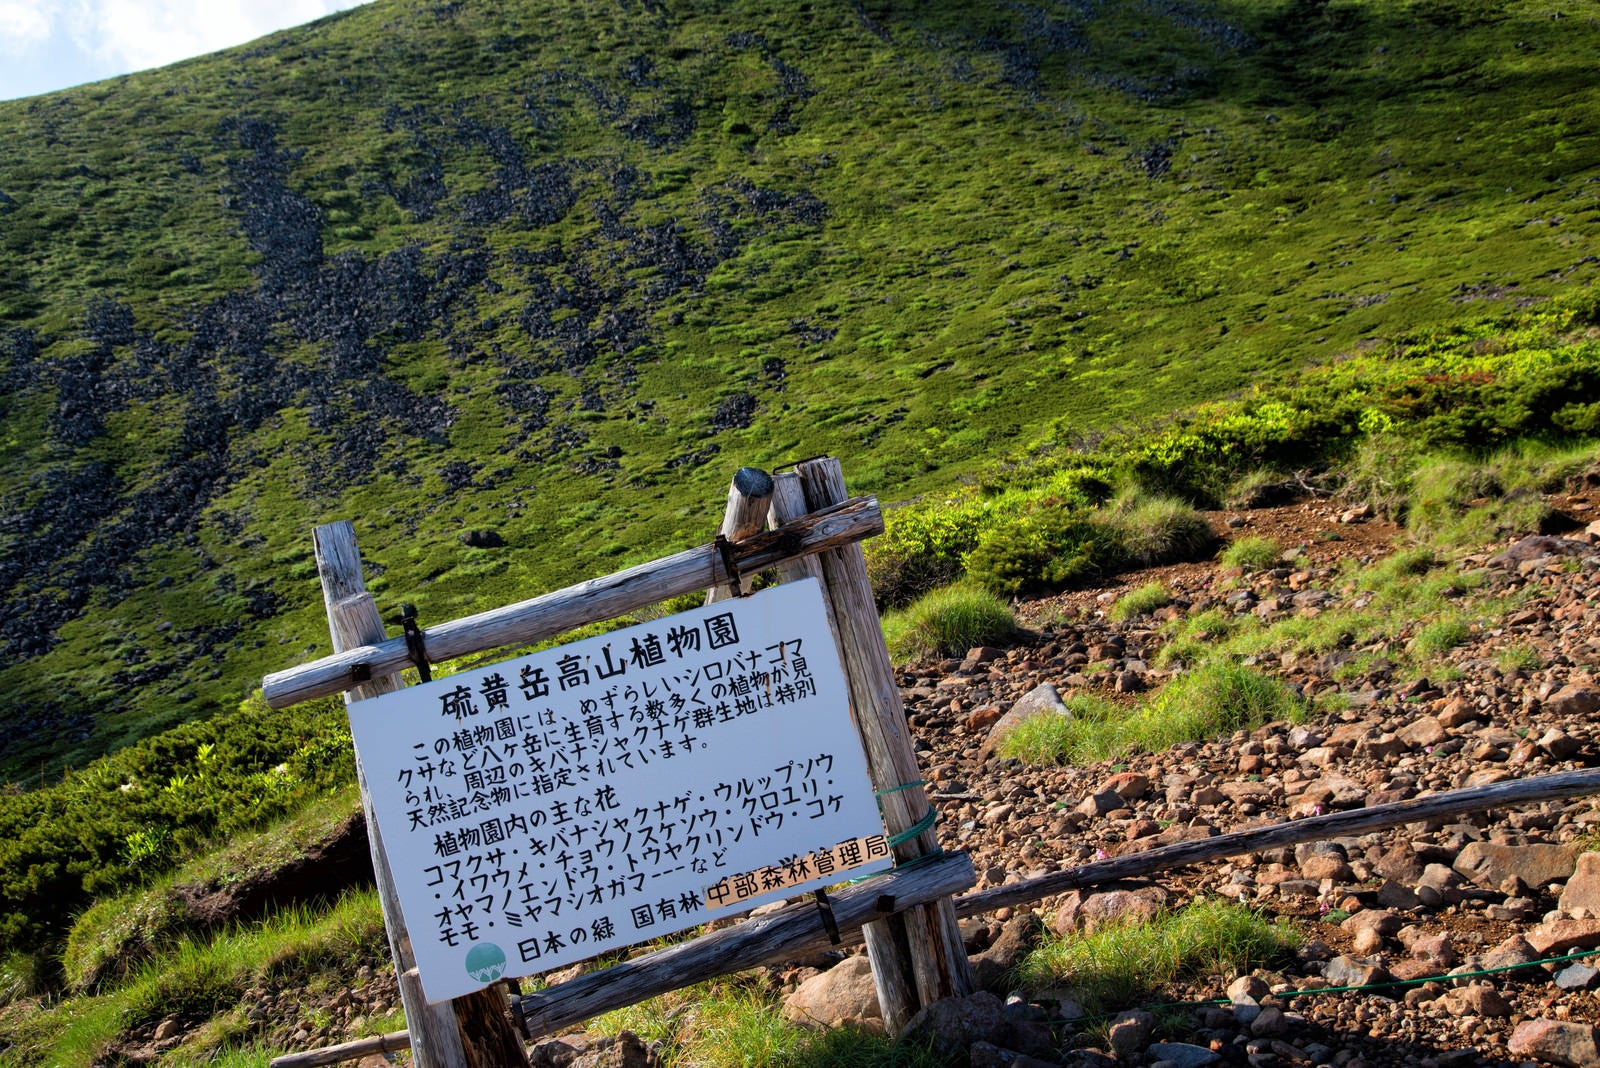 「硫黄岳高山植物園の看板」の写真